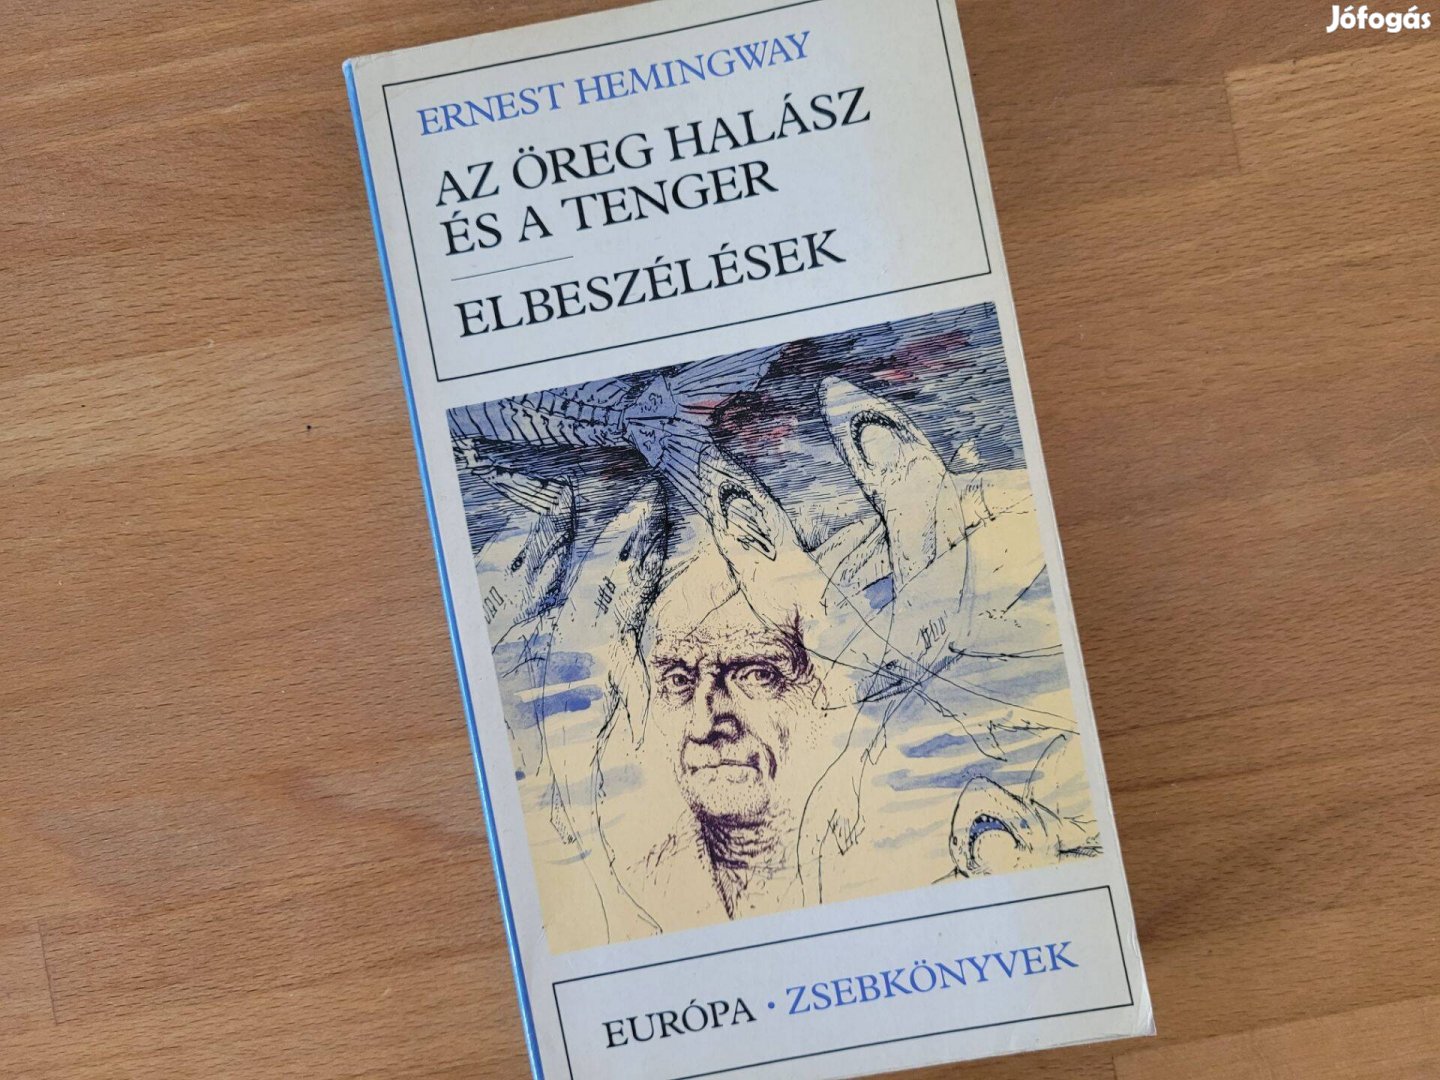 Hemingway - Az öreg halász és a tenger. Elbeszélések (Európa, 1985)